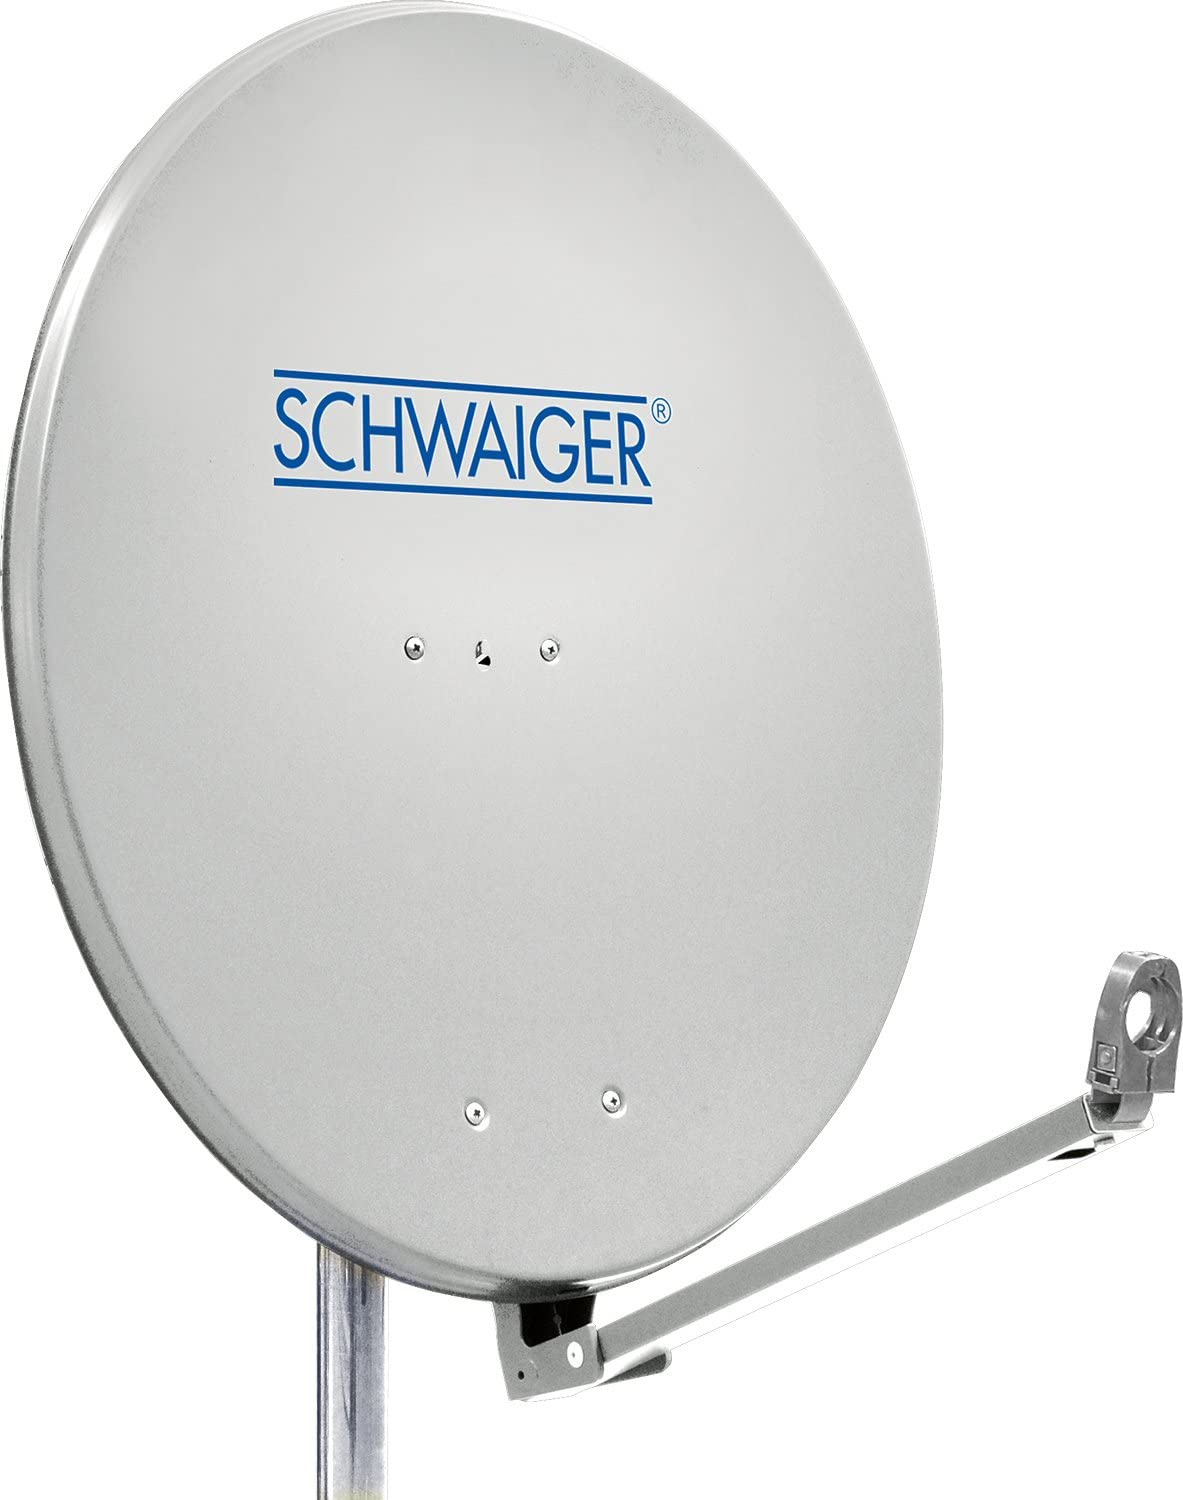 SCHWAIGER -SPI910.0- Aluminium Offset Antenne (Ø 88 cm)